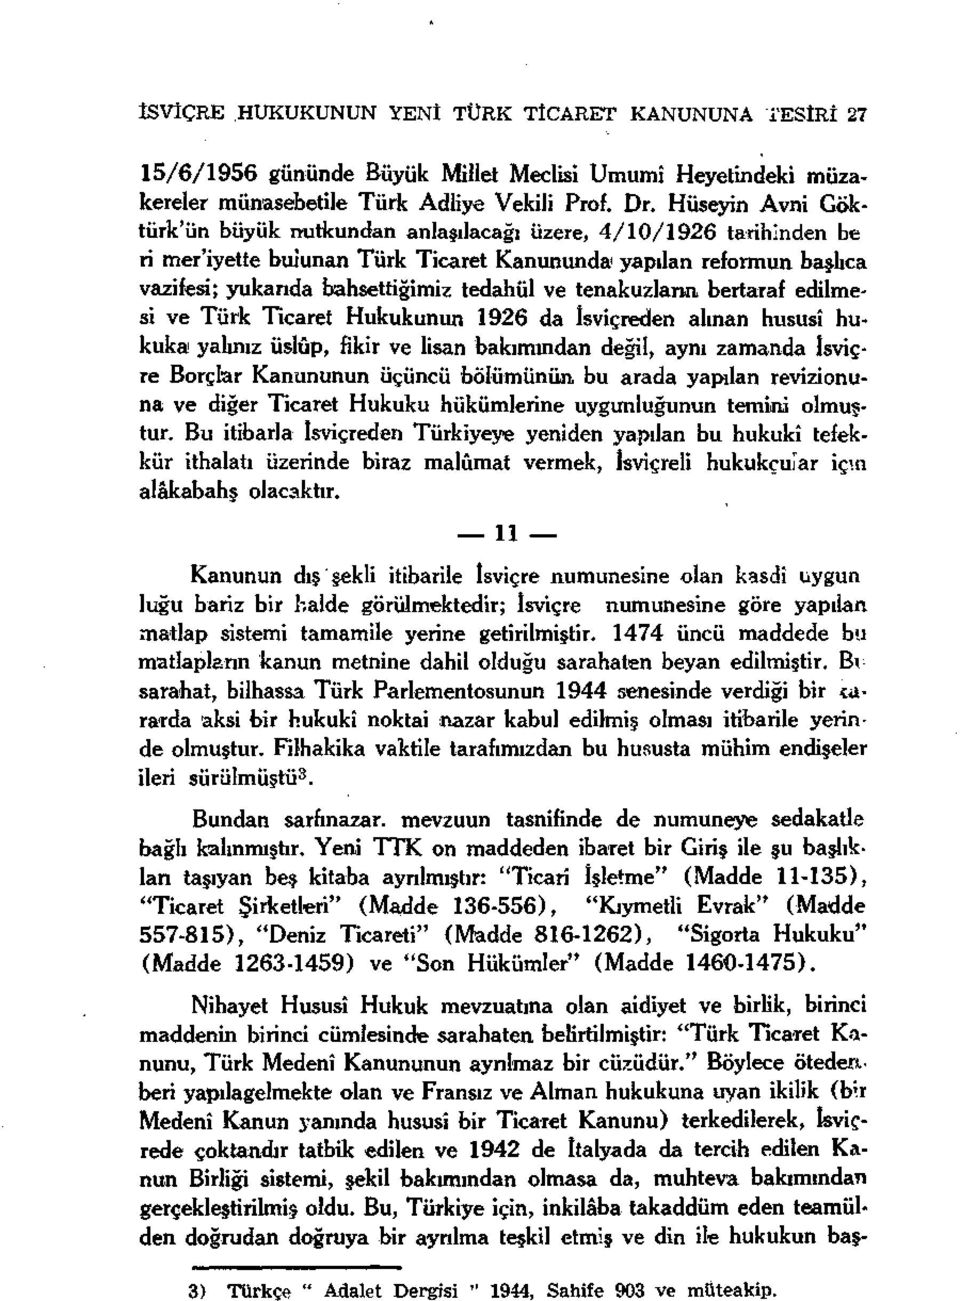 tenakuzların bertaraf edilmesi ve Türk Ticaret Hukukunun 1926 da İsviçreden alınan hususî hukuka yalınız üslûp, fikir ve lisan bakımından değil, aynı zamanda isviçre Borçlar Kanununun üçüncü